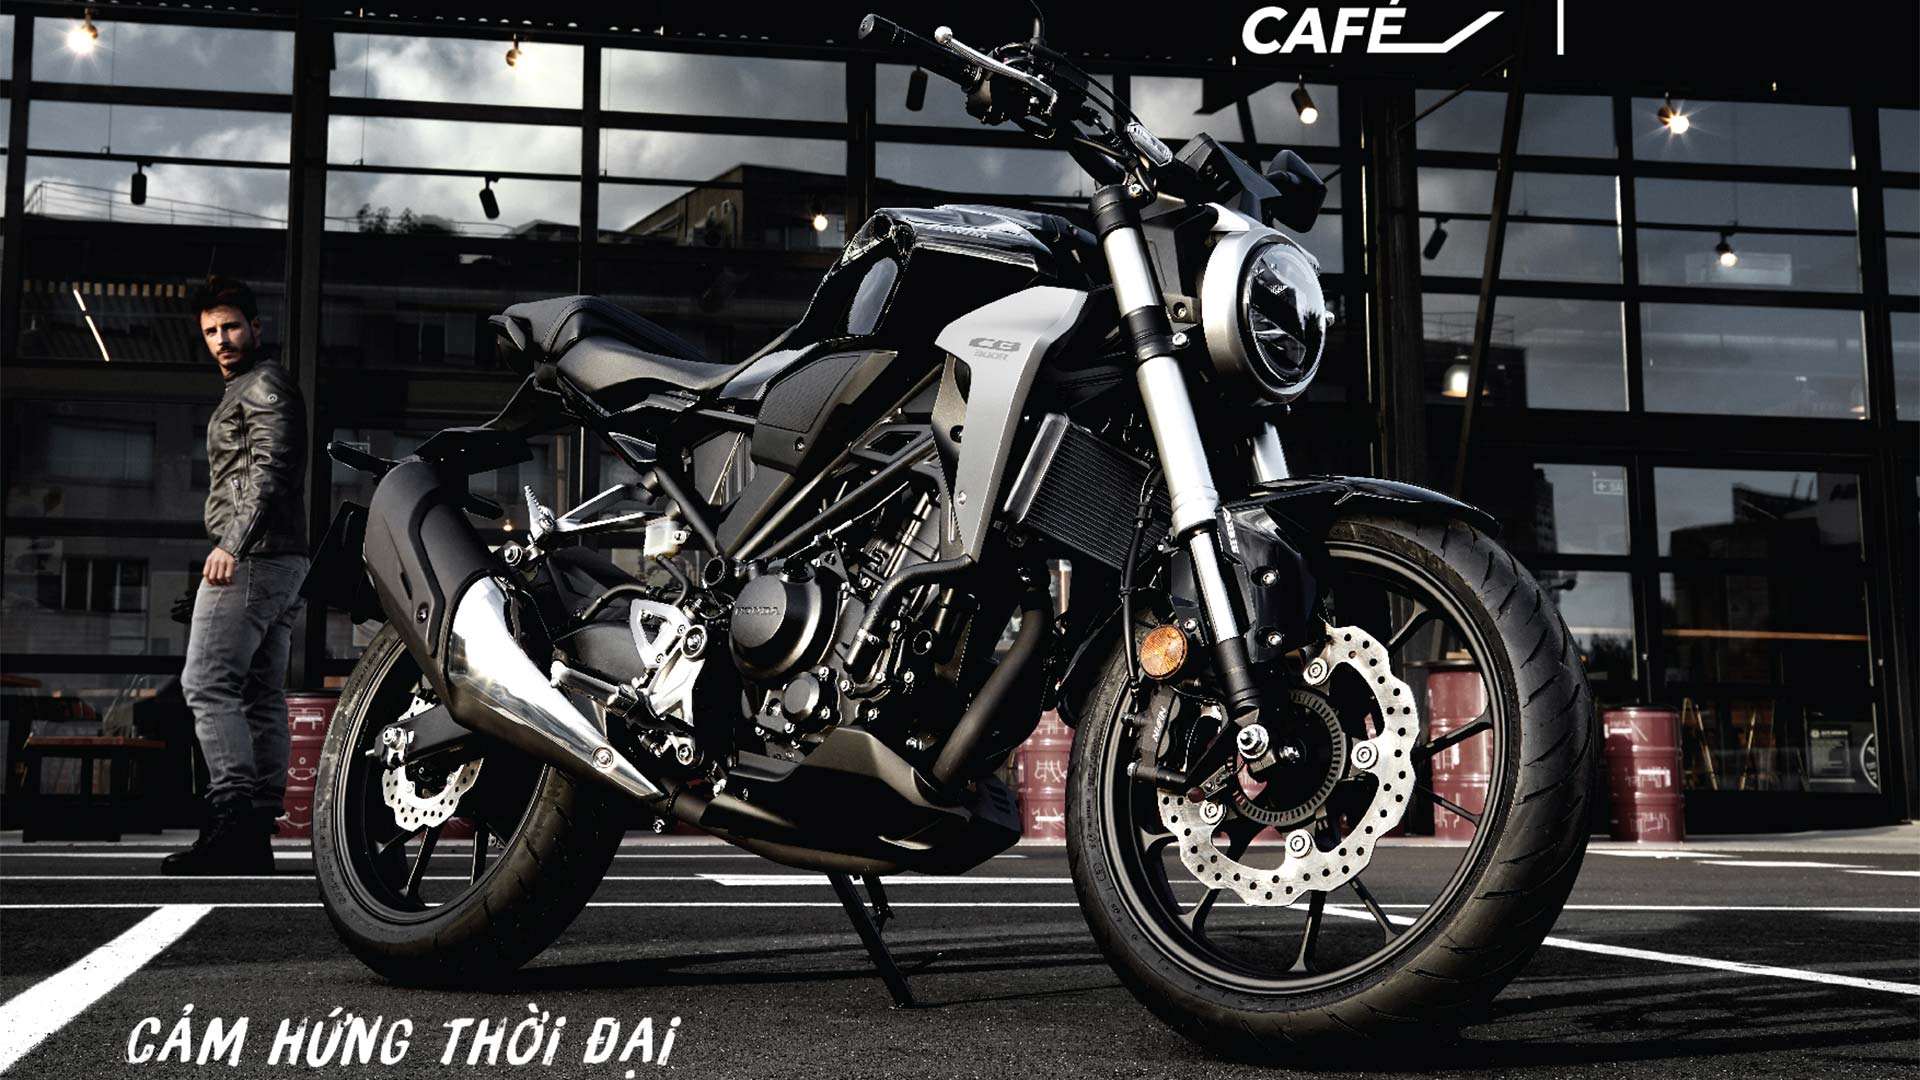 Honda CB300R 2019 ra mắt thị trường Việt Nam, giá 140 triệu đồng